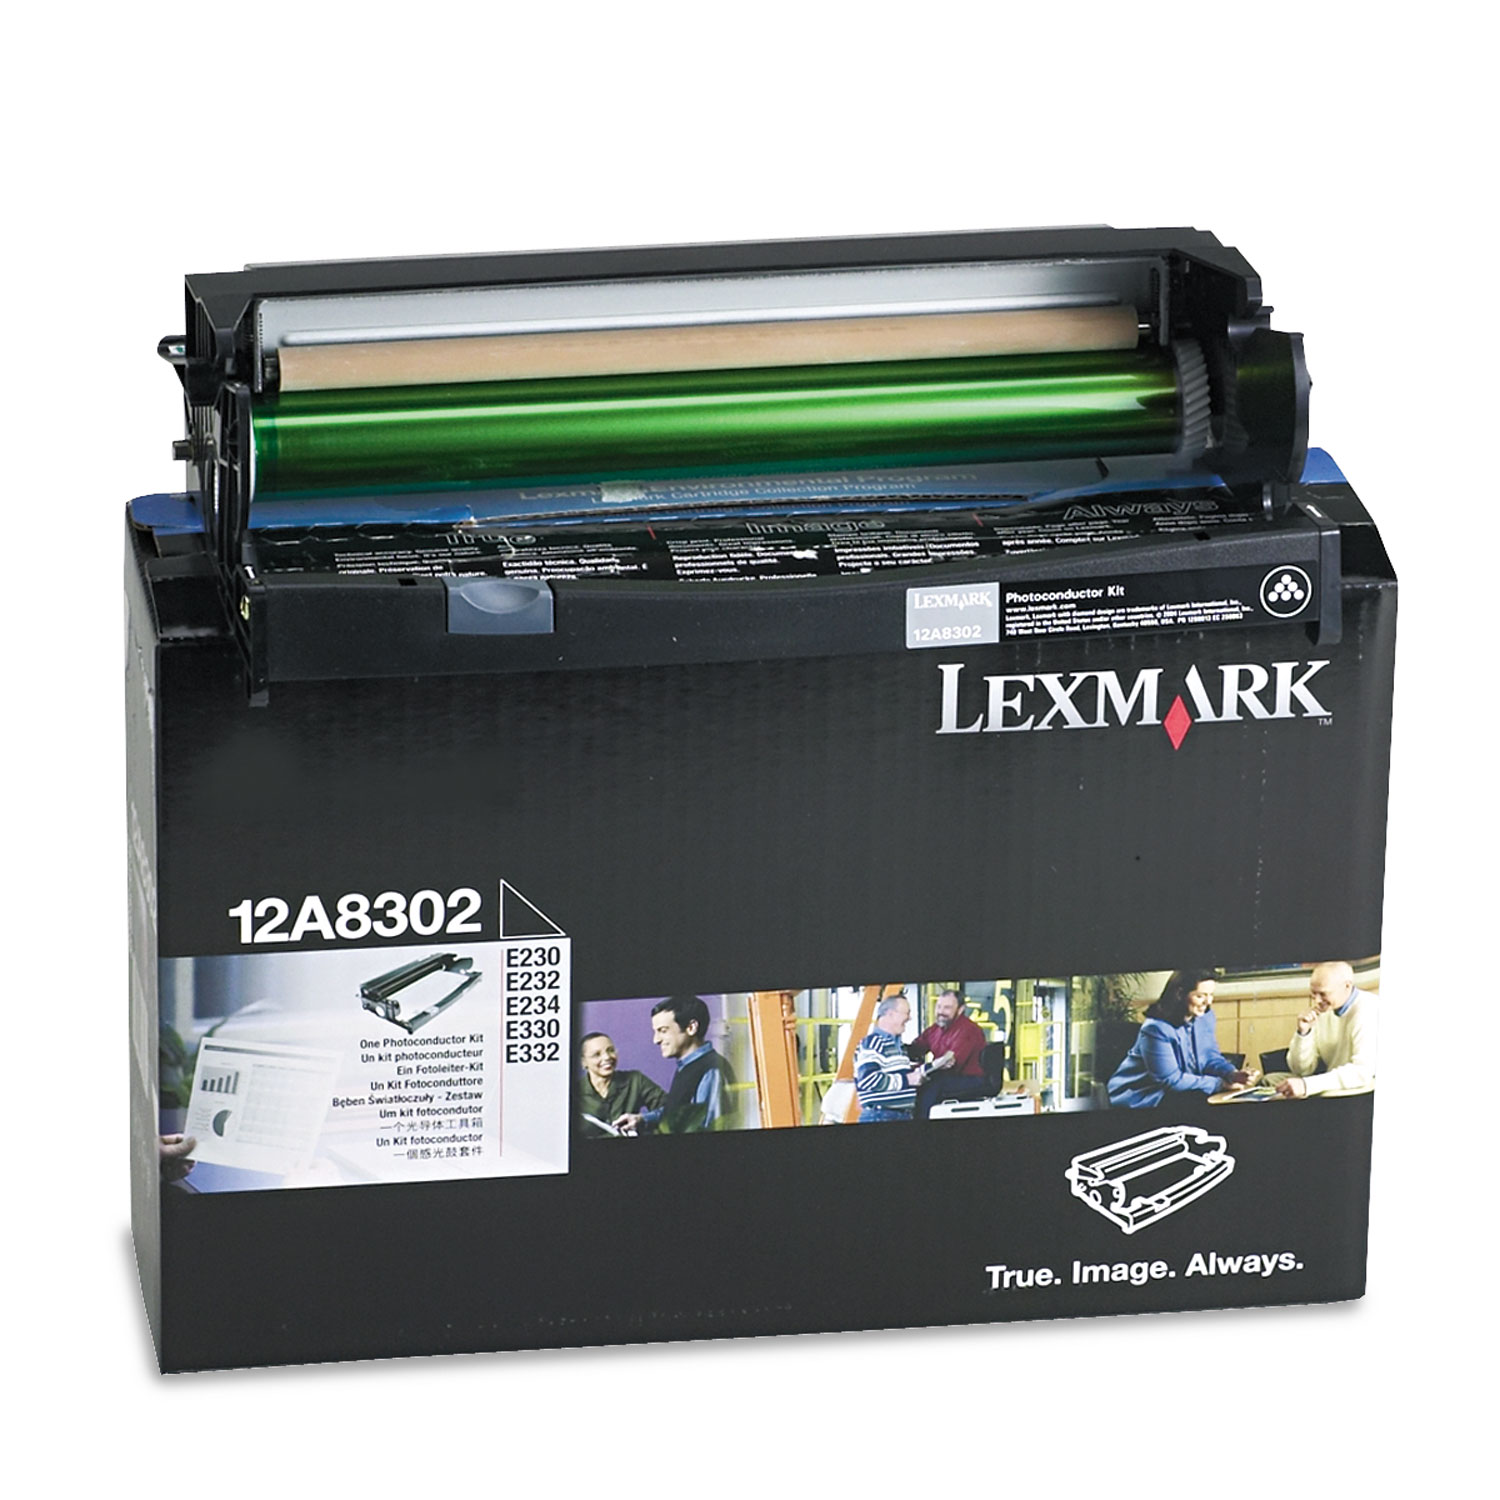 Lexmark LEX12A8302 12A8302 Photoconductor Kit, Black